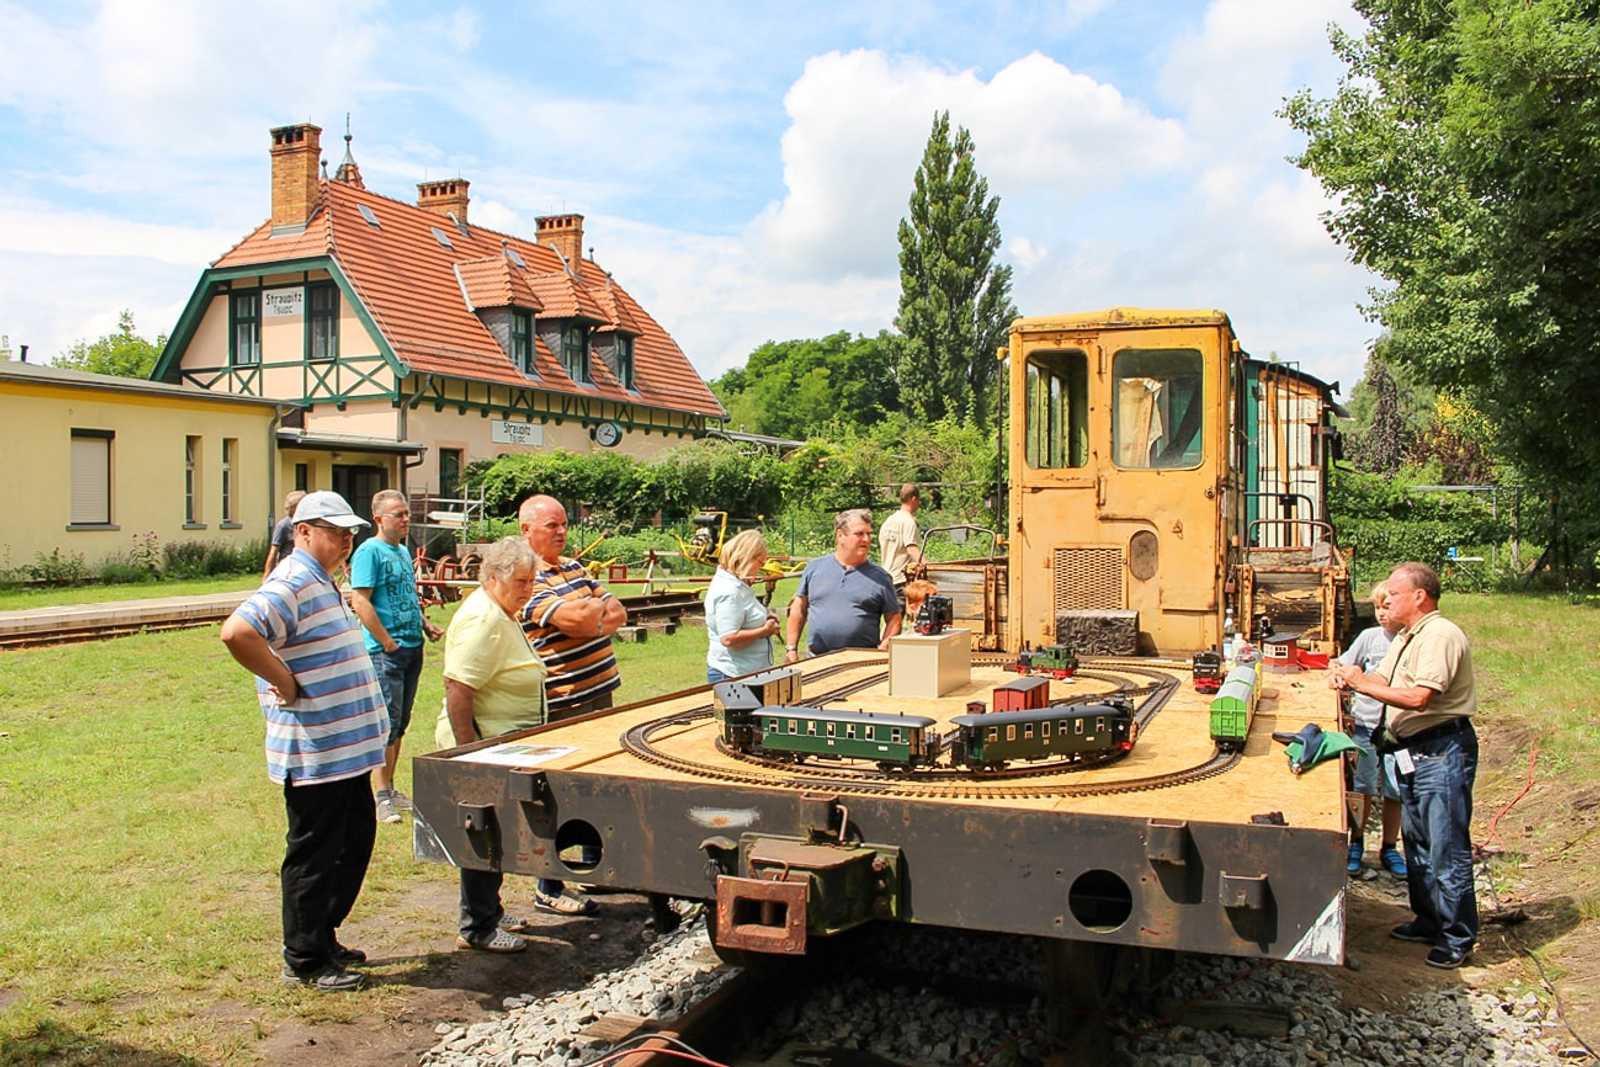 Im Rahmen des 4. Spreewaldbahnfestes präsentierte die IG Spreewaldbahn am 22./23. Juli auf ihrem Skl-Beiwagen eine Gartenbahn, im Hintergrund der Skl vom Typ SKL24.